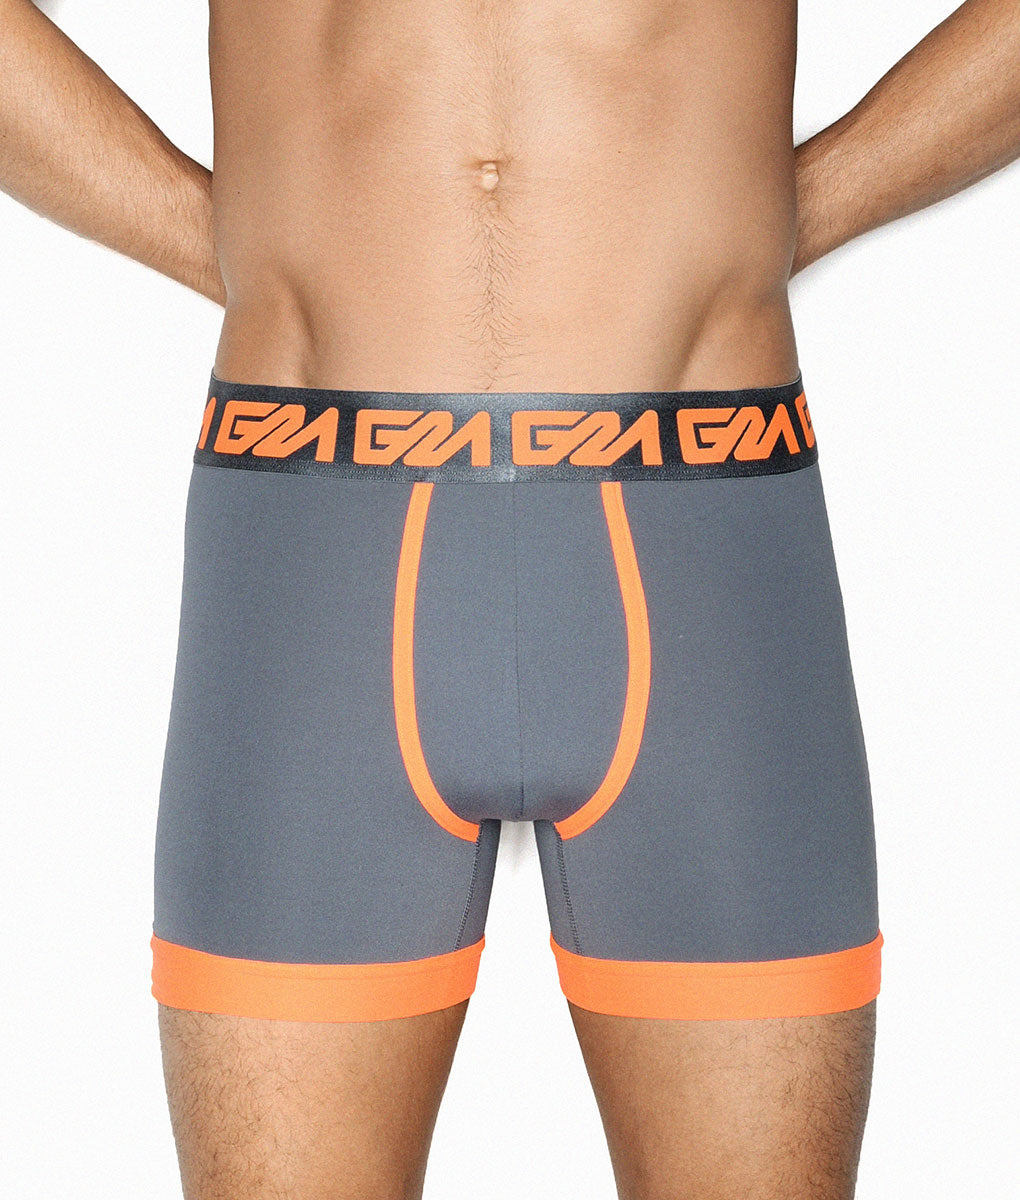 Garcon Model Boxer Brief - Underwear Expert